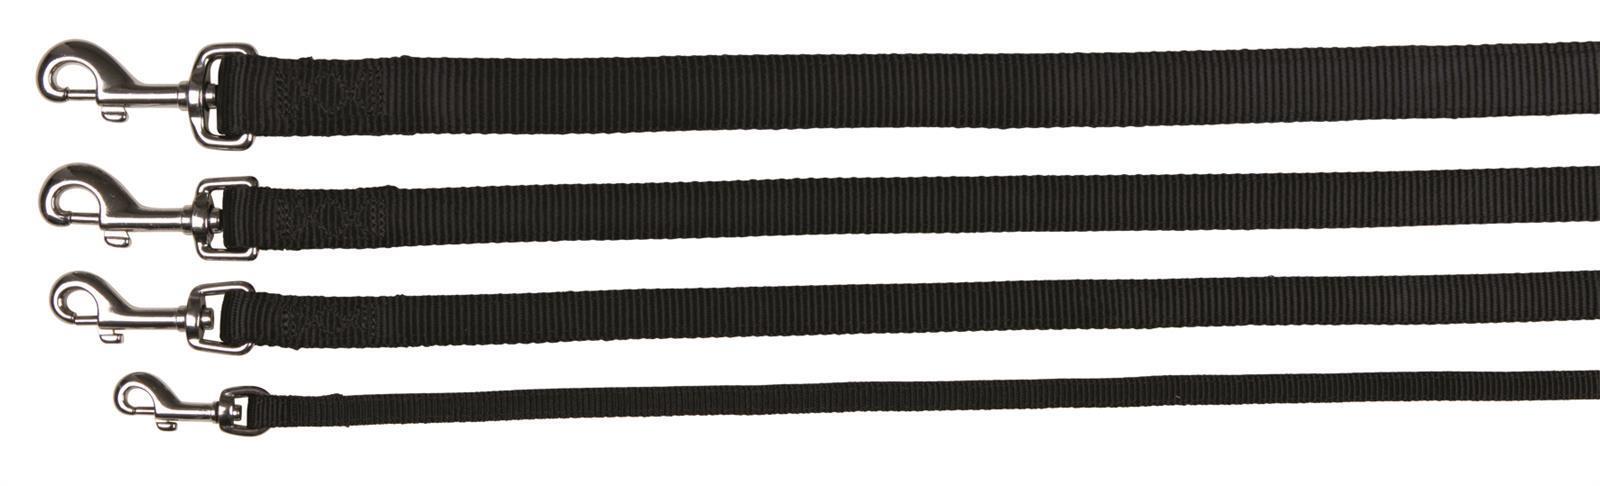 Trixie Premium Leine, Größe M-L, 1,00 m, 20 mm, schwarz